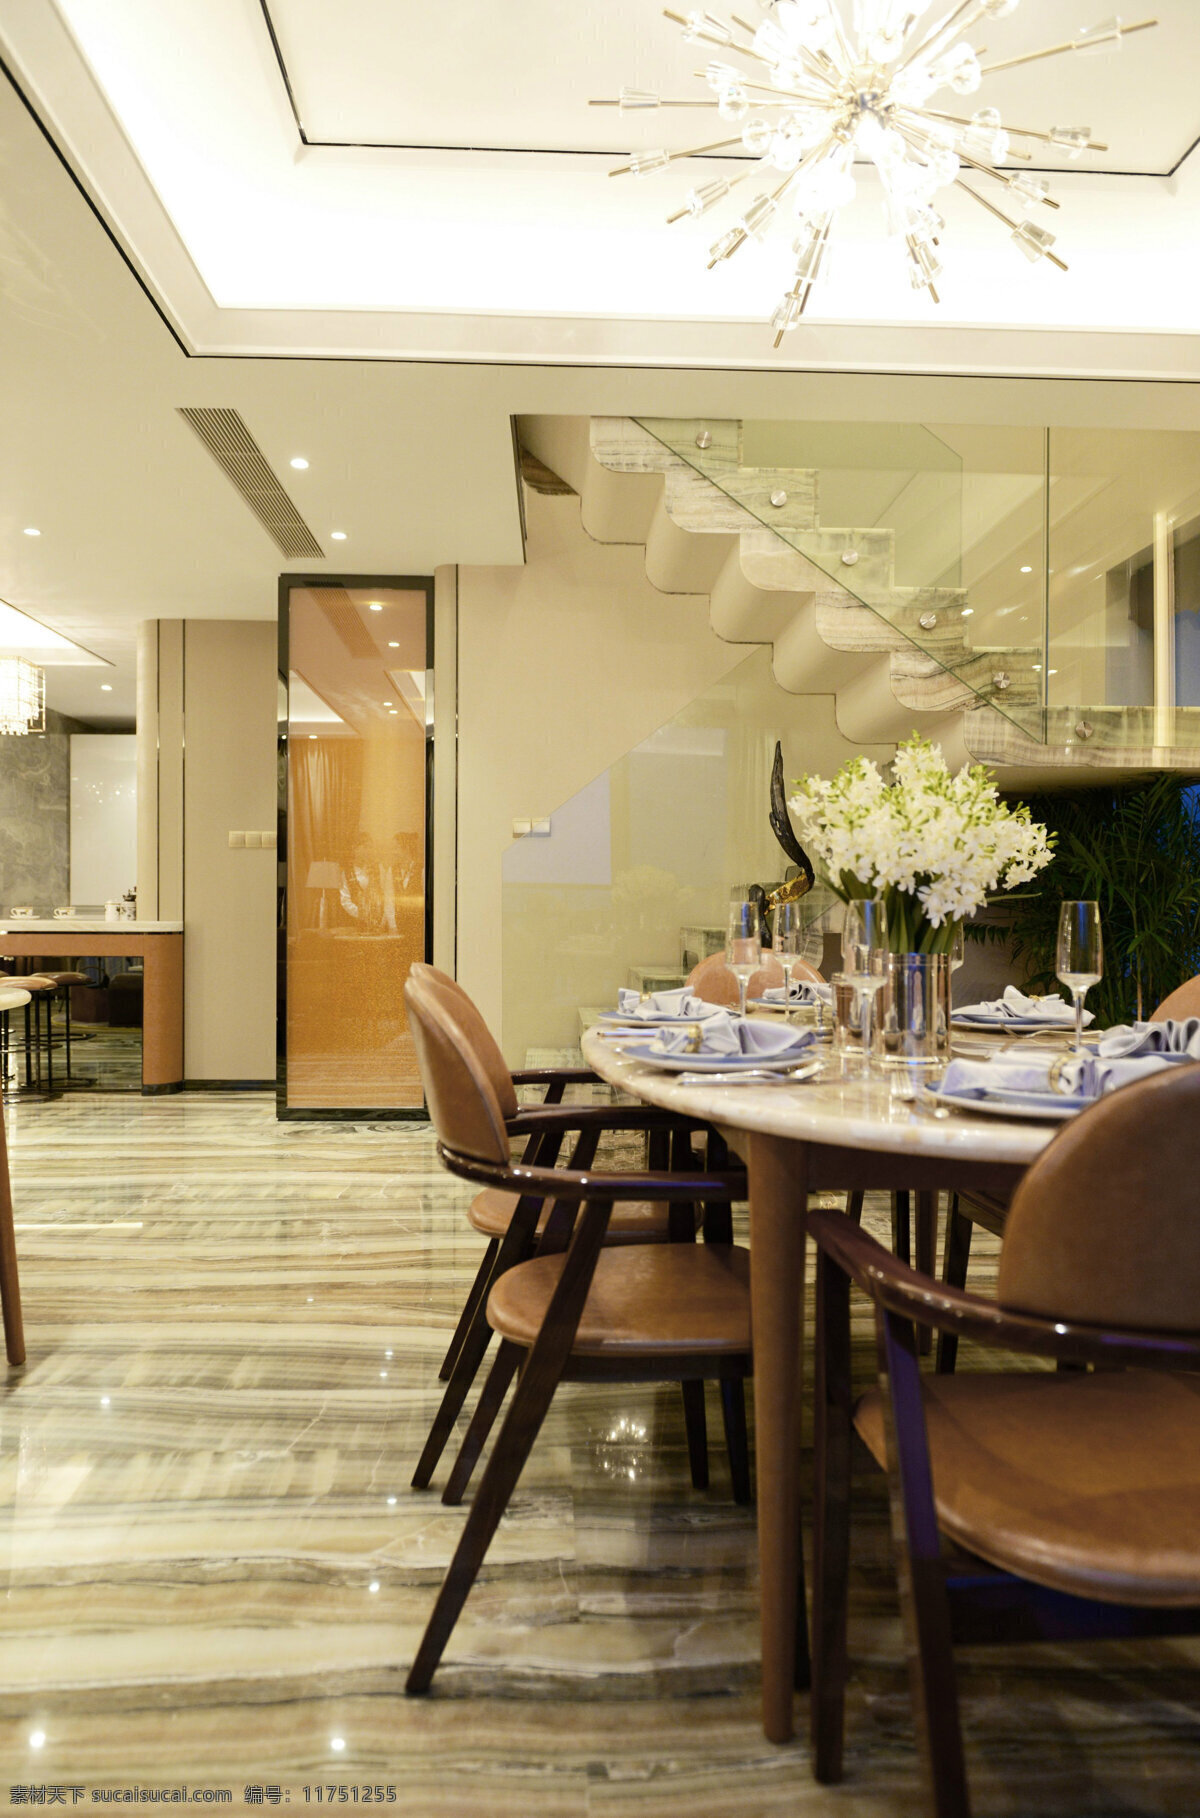 现代 时尚 客厅 白色 水晶灯 室内装修 效果图 客厅装修 白色水晶灯 褐色椅子 圆形餐桌